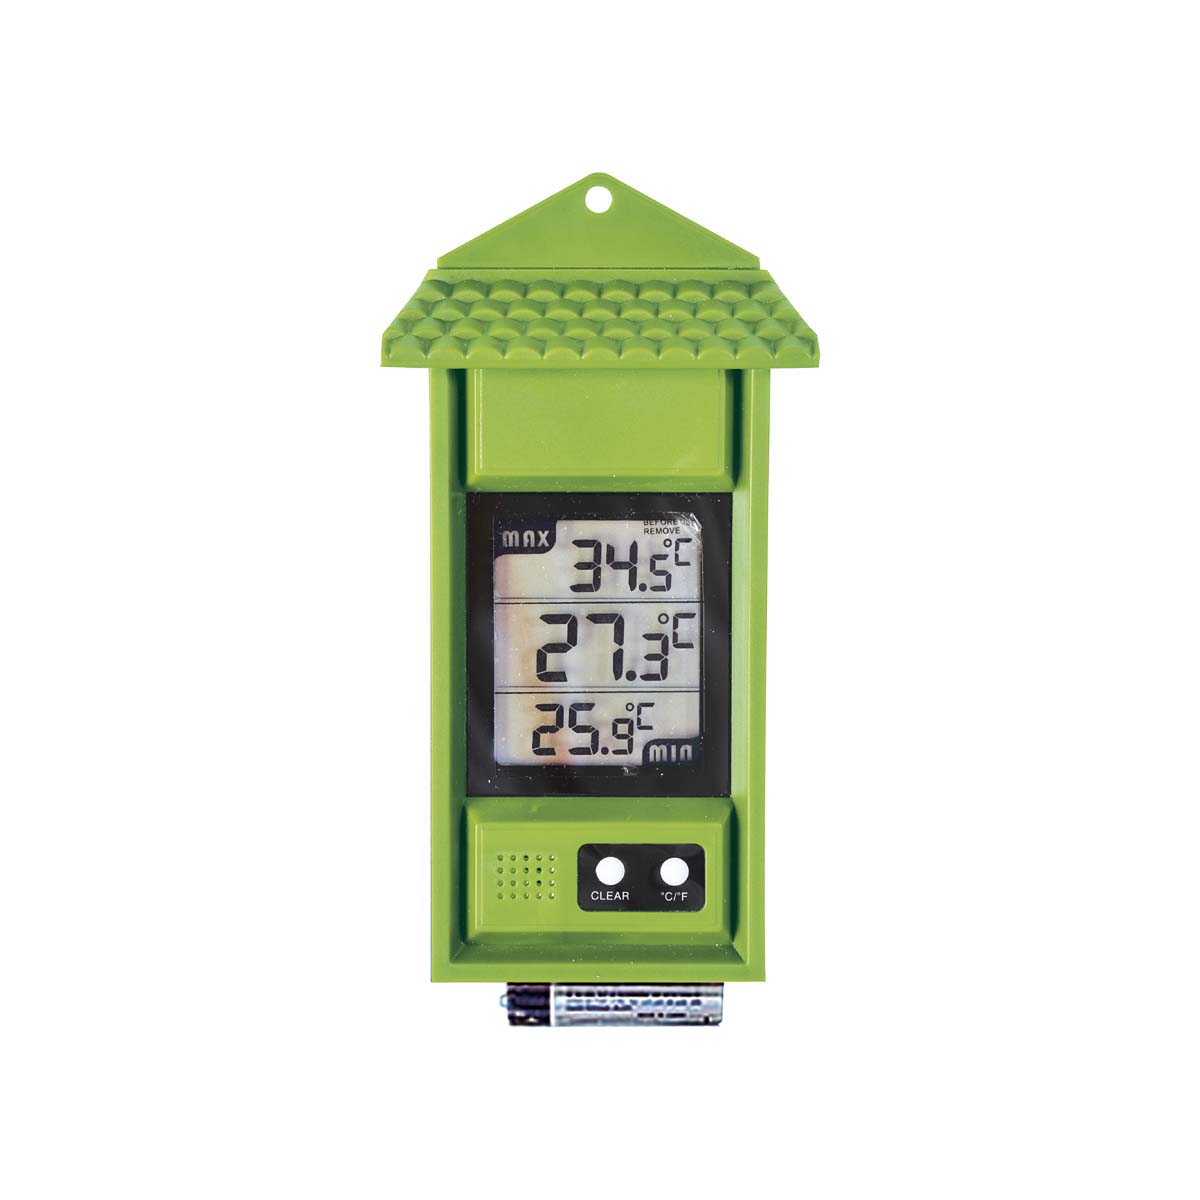 Verdemax Termometro min-max digitale in plastica